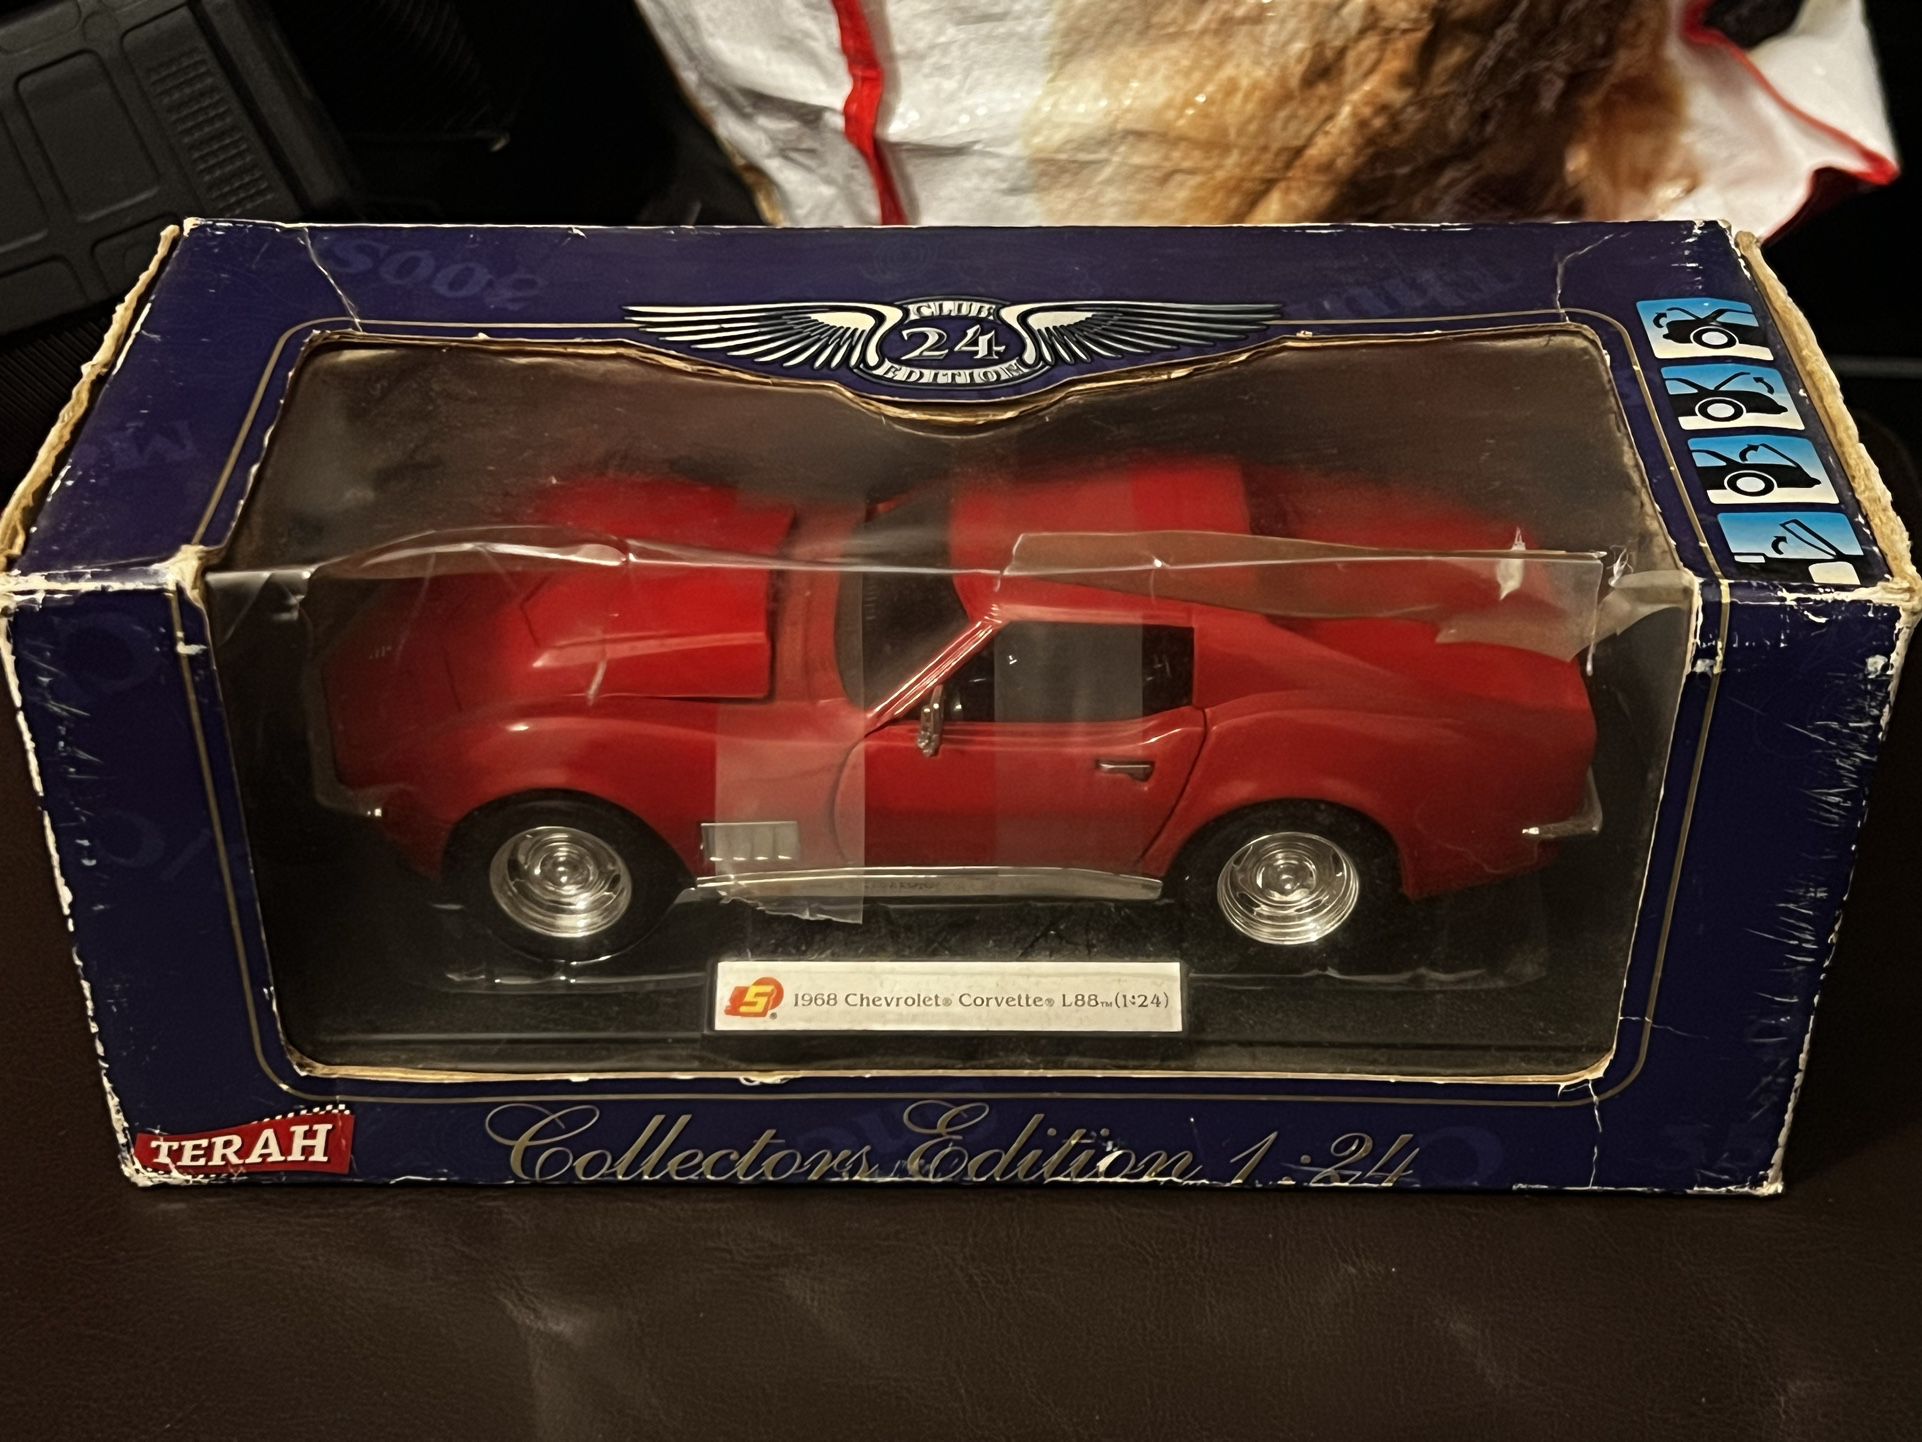 Toy 1968 chevrolet corvette L88 (1:24) Terah Collectors edition